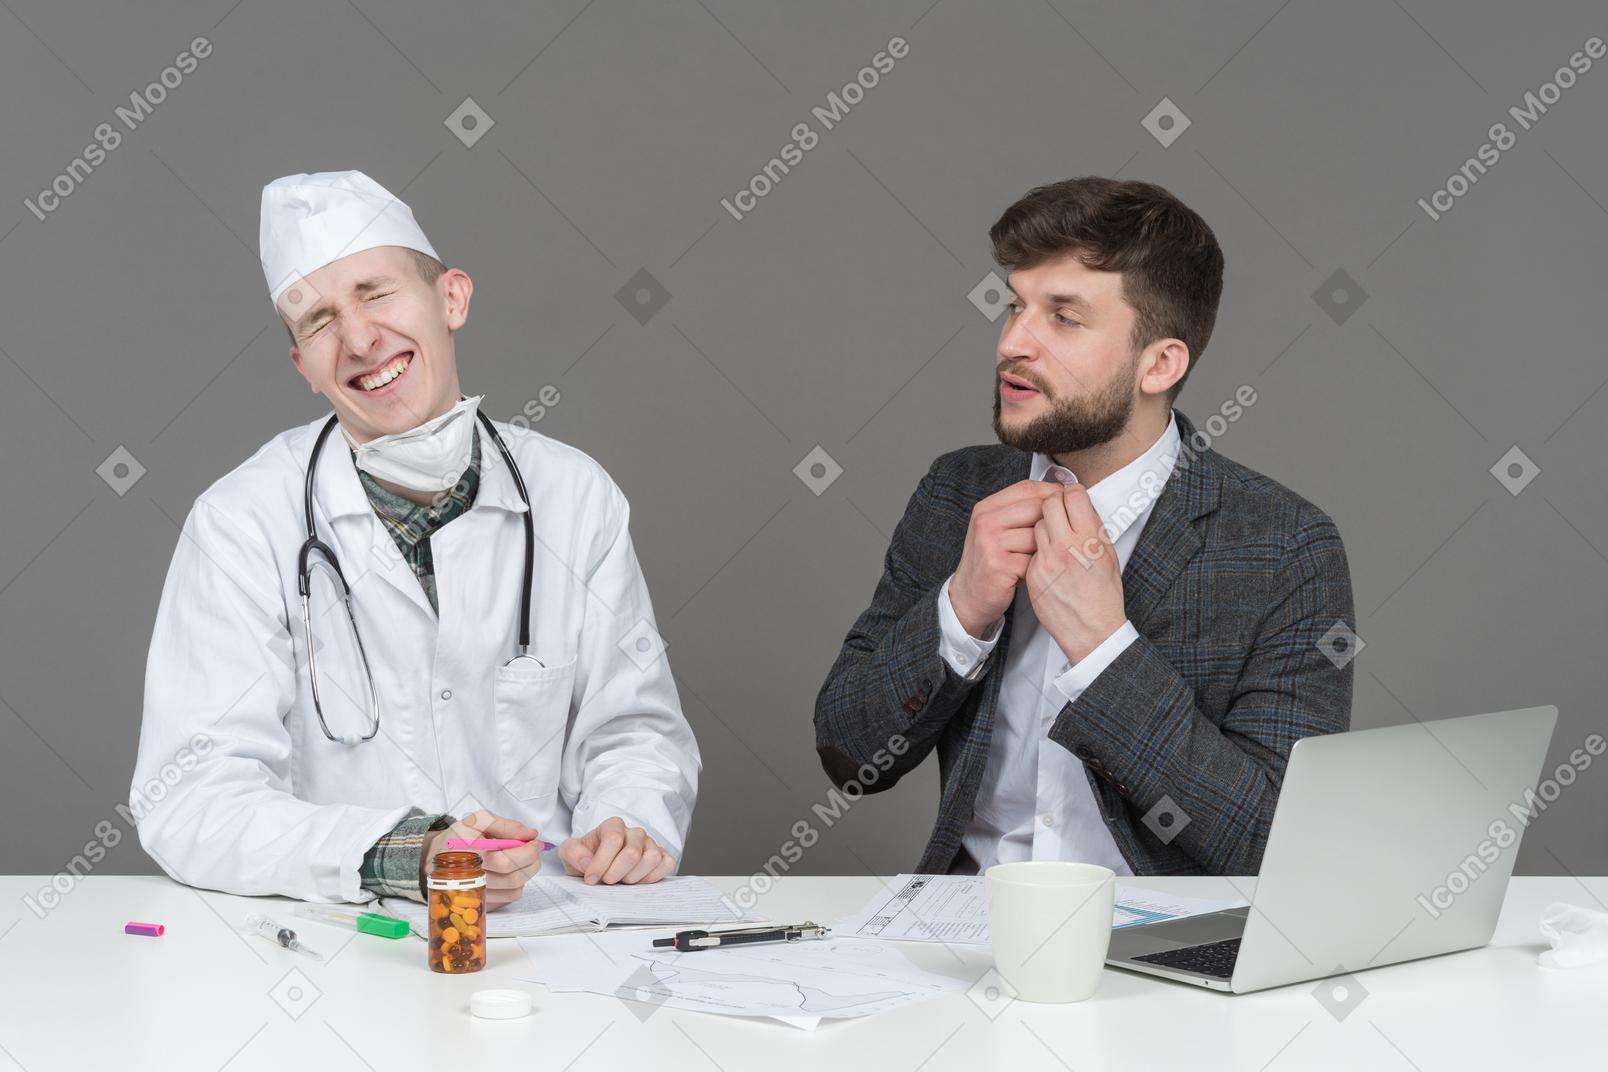 Un doctor riendo con su paciente